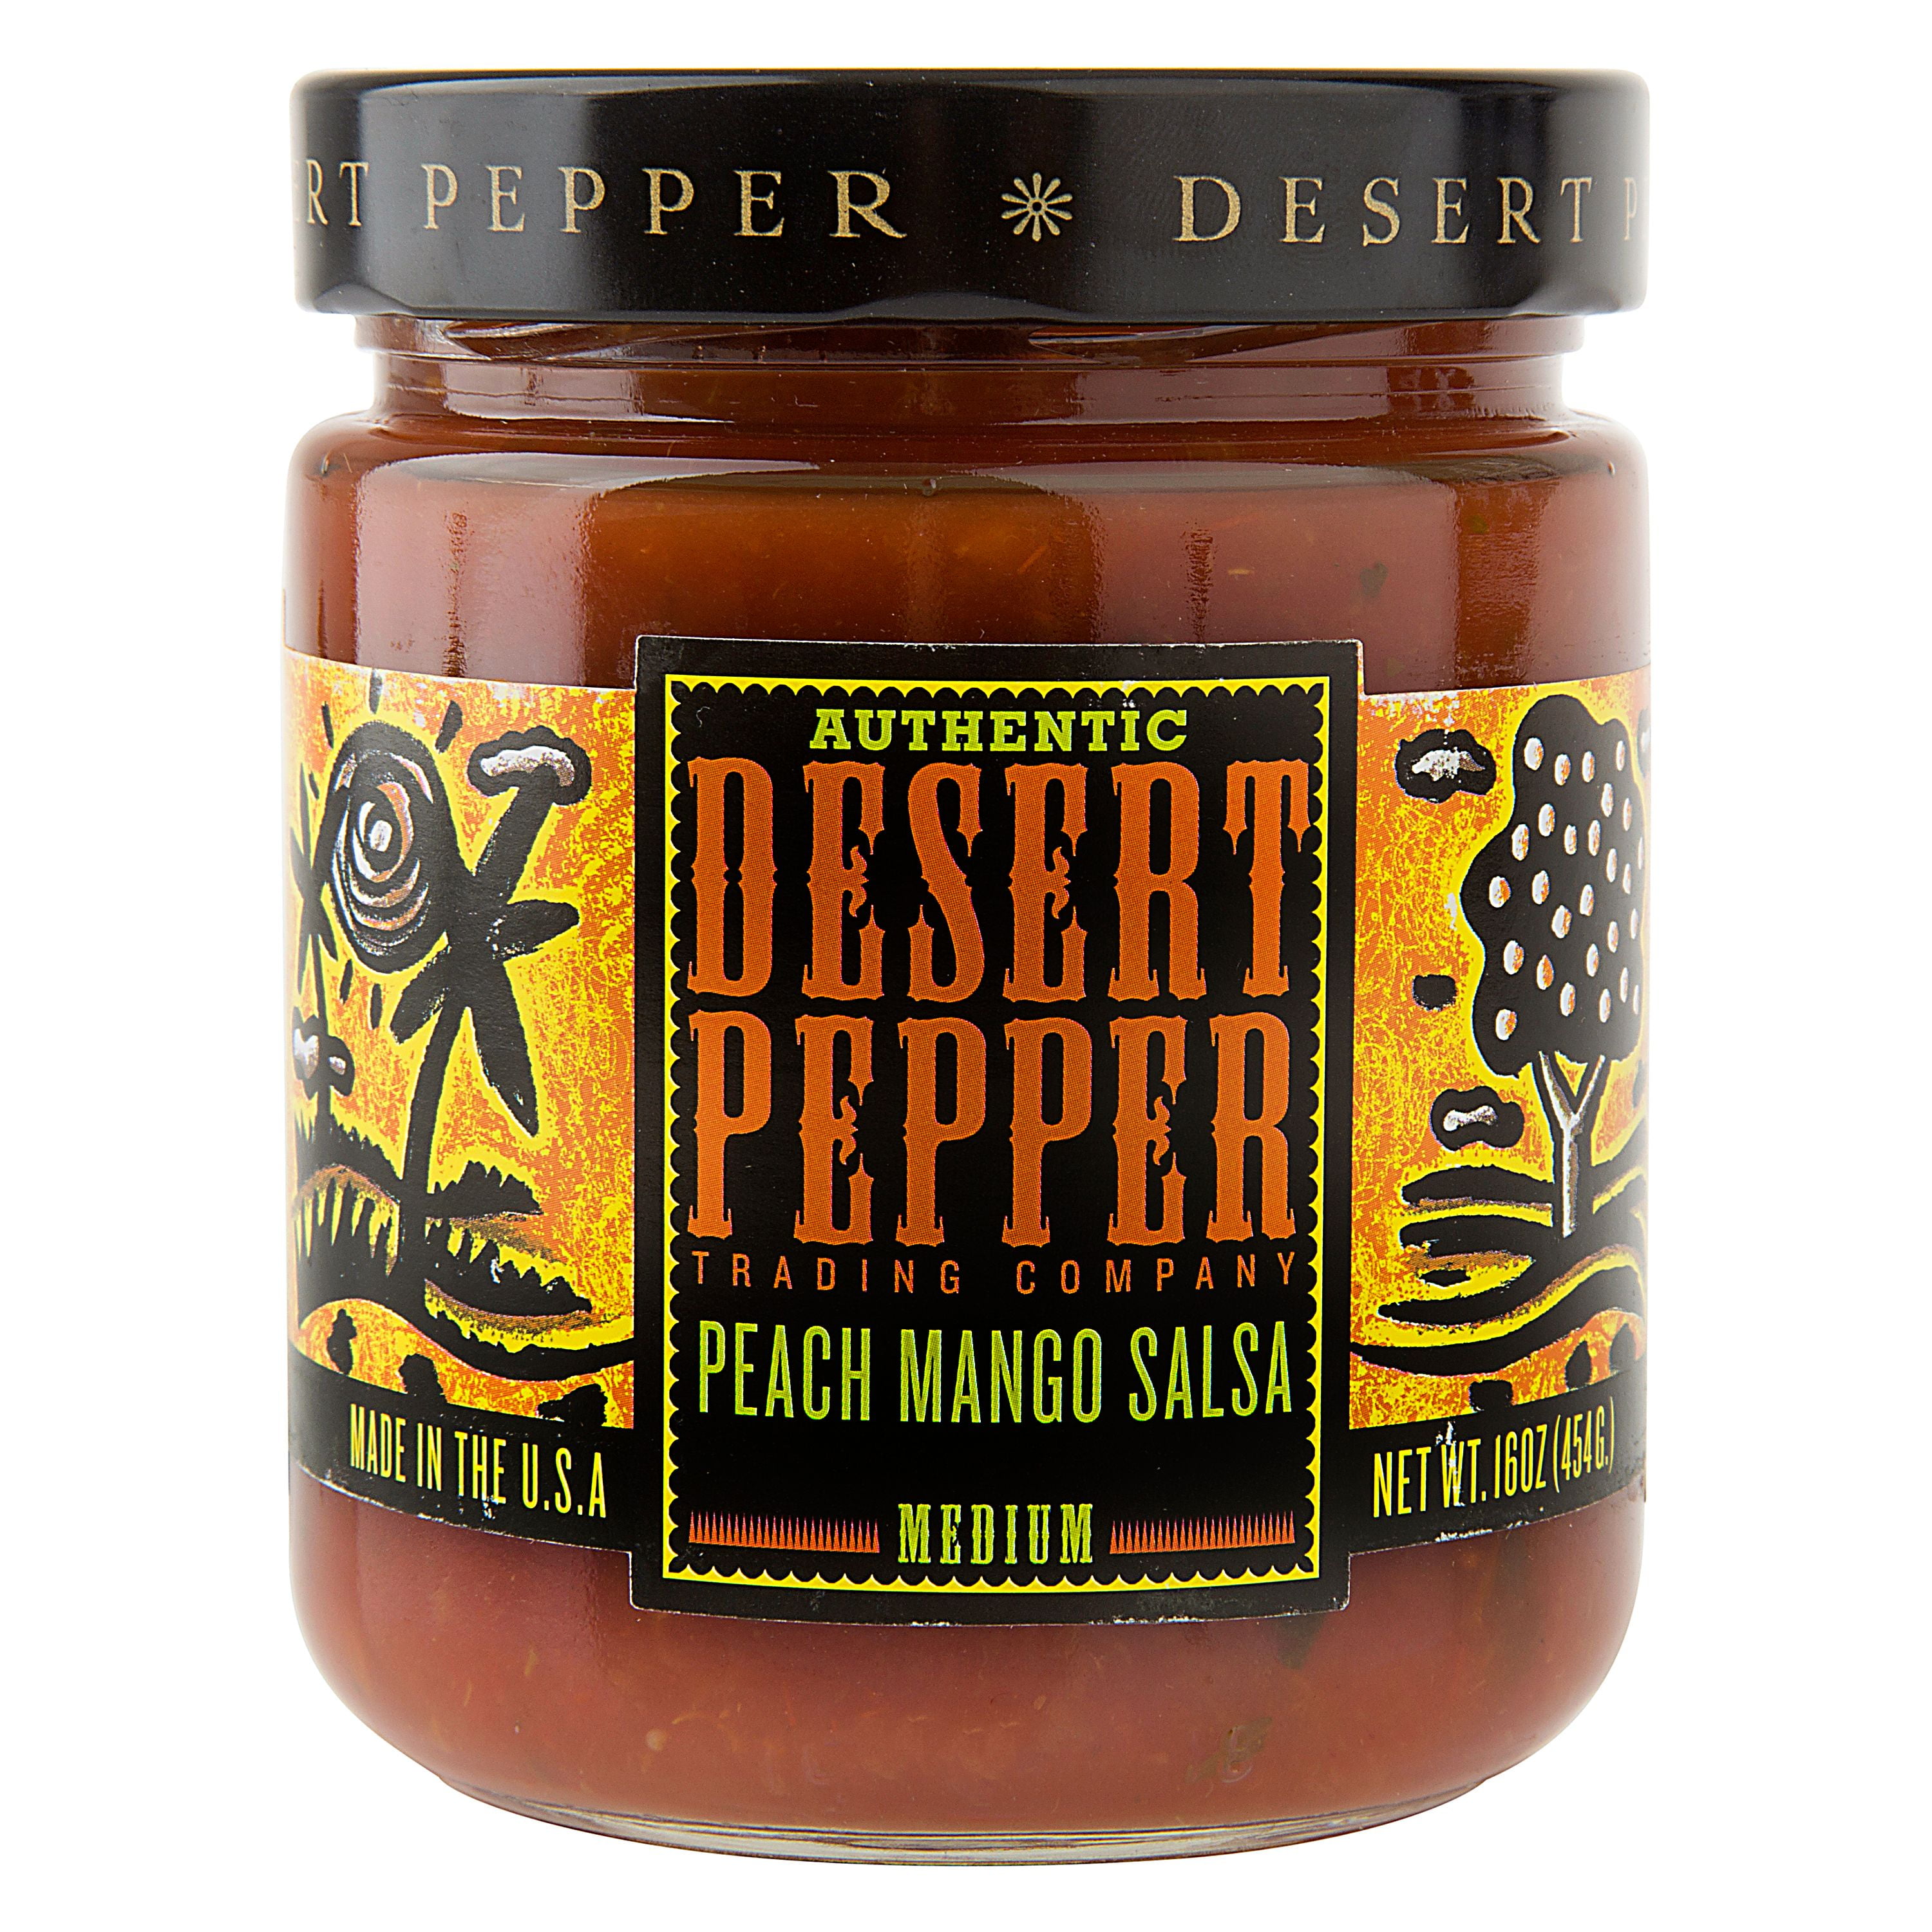 Desert Pepper Peach Mango Salsa, 16 Oz. Jar - Walmart.com